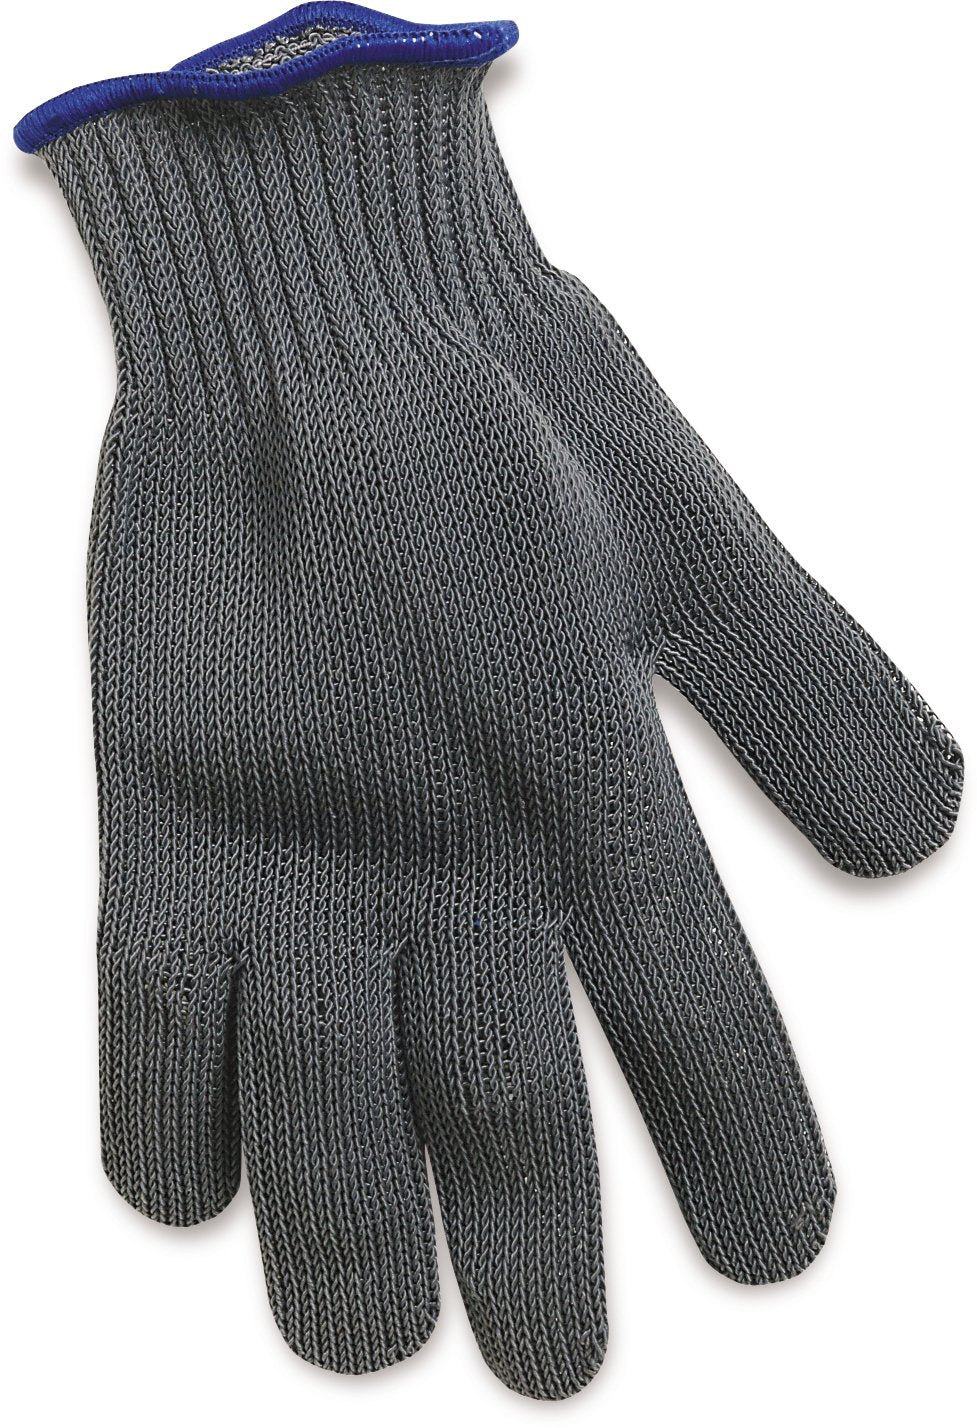 Rapala Filet Glove (Ambidextrous, Small, Gray)